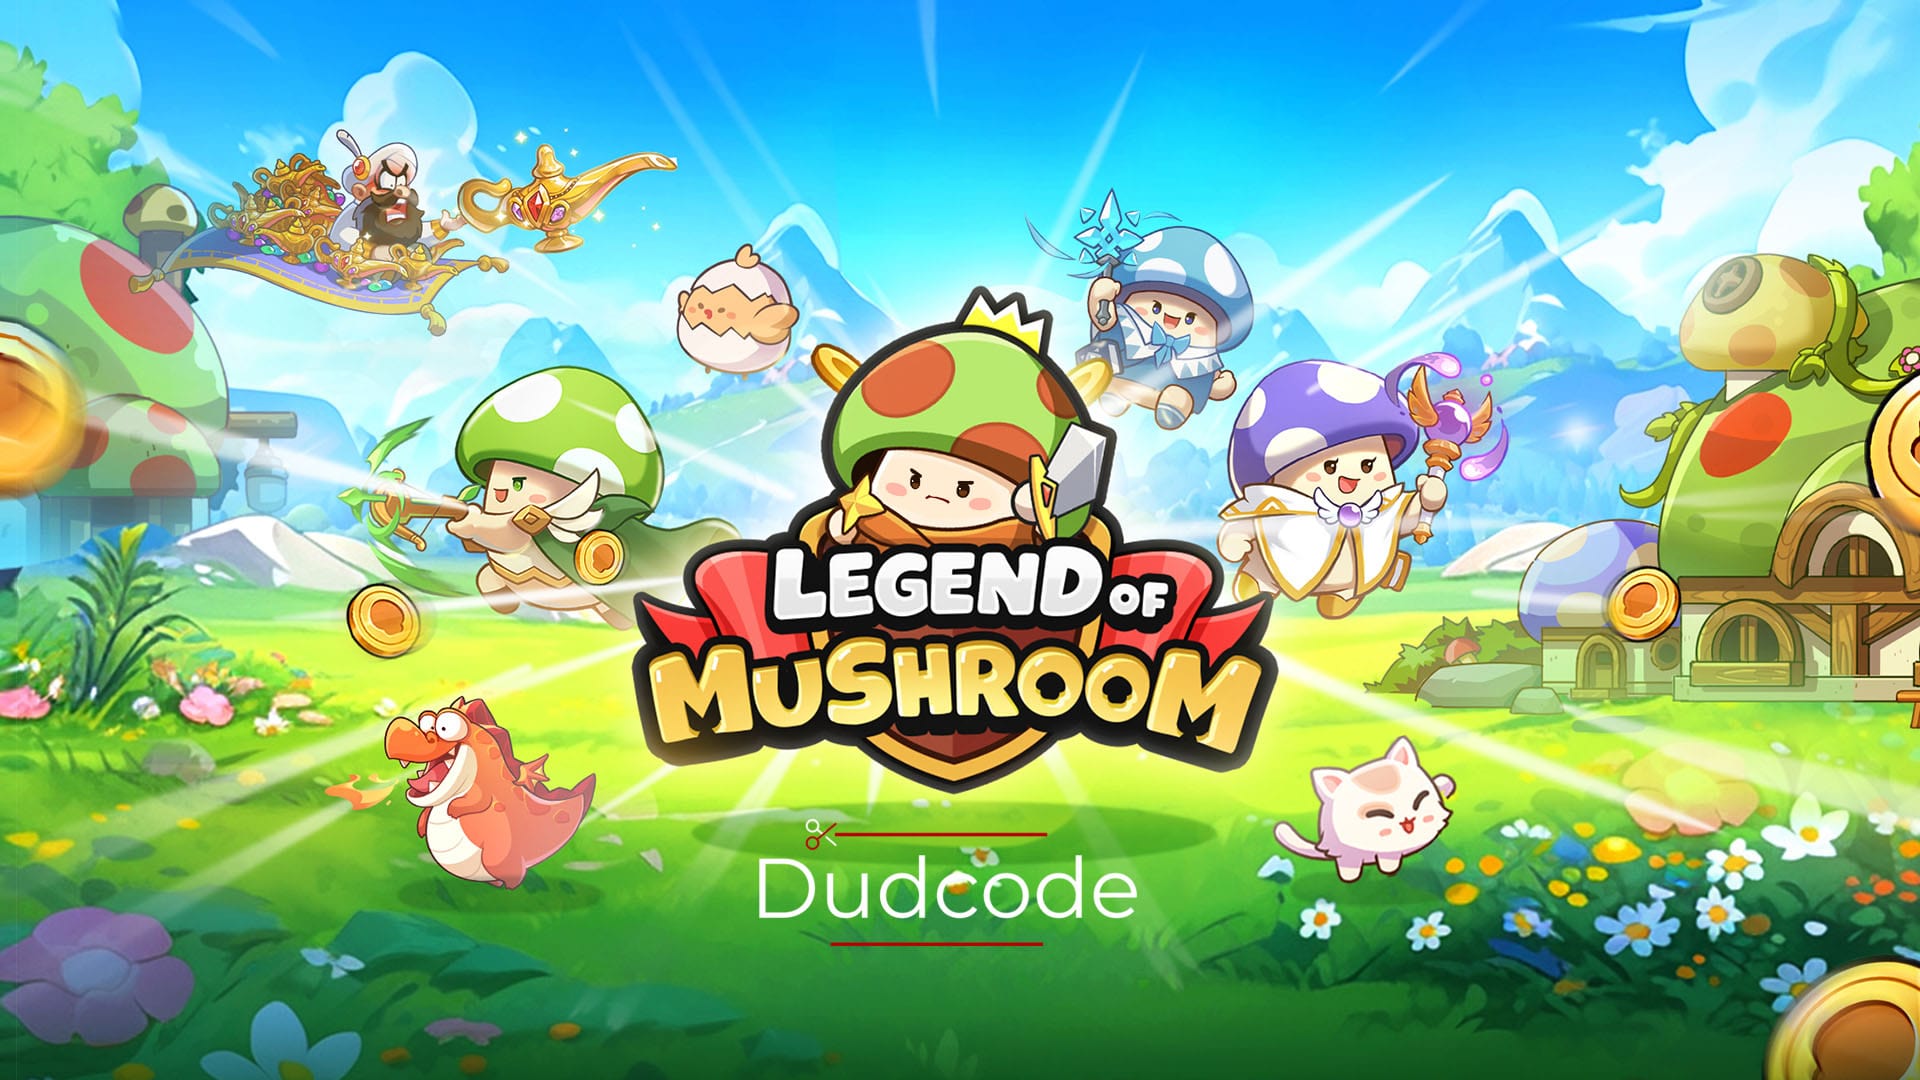 Legend of Mushroom Codes